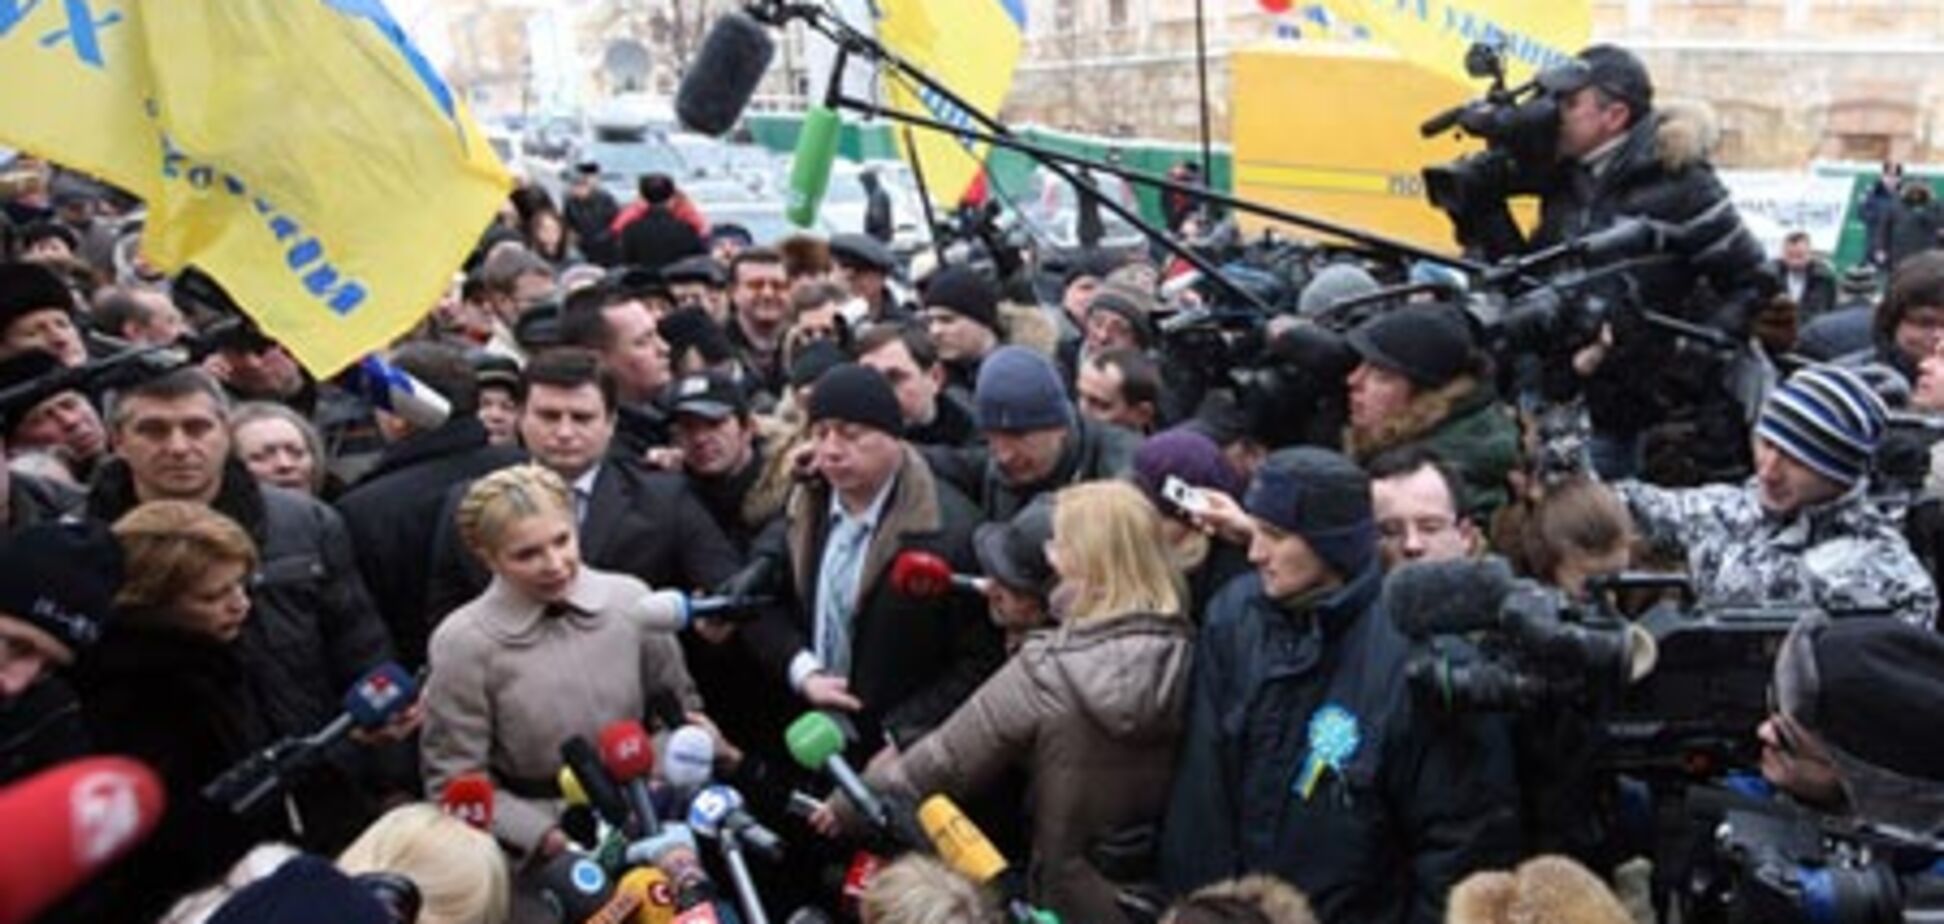 Тимошенко под арестом ... пока что - домашним